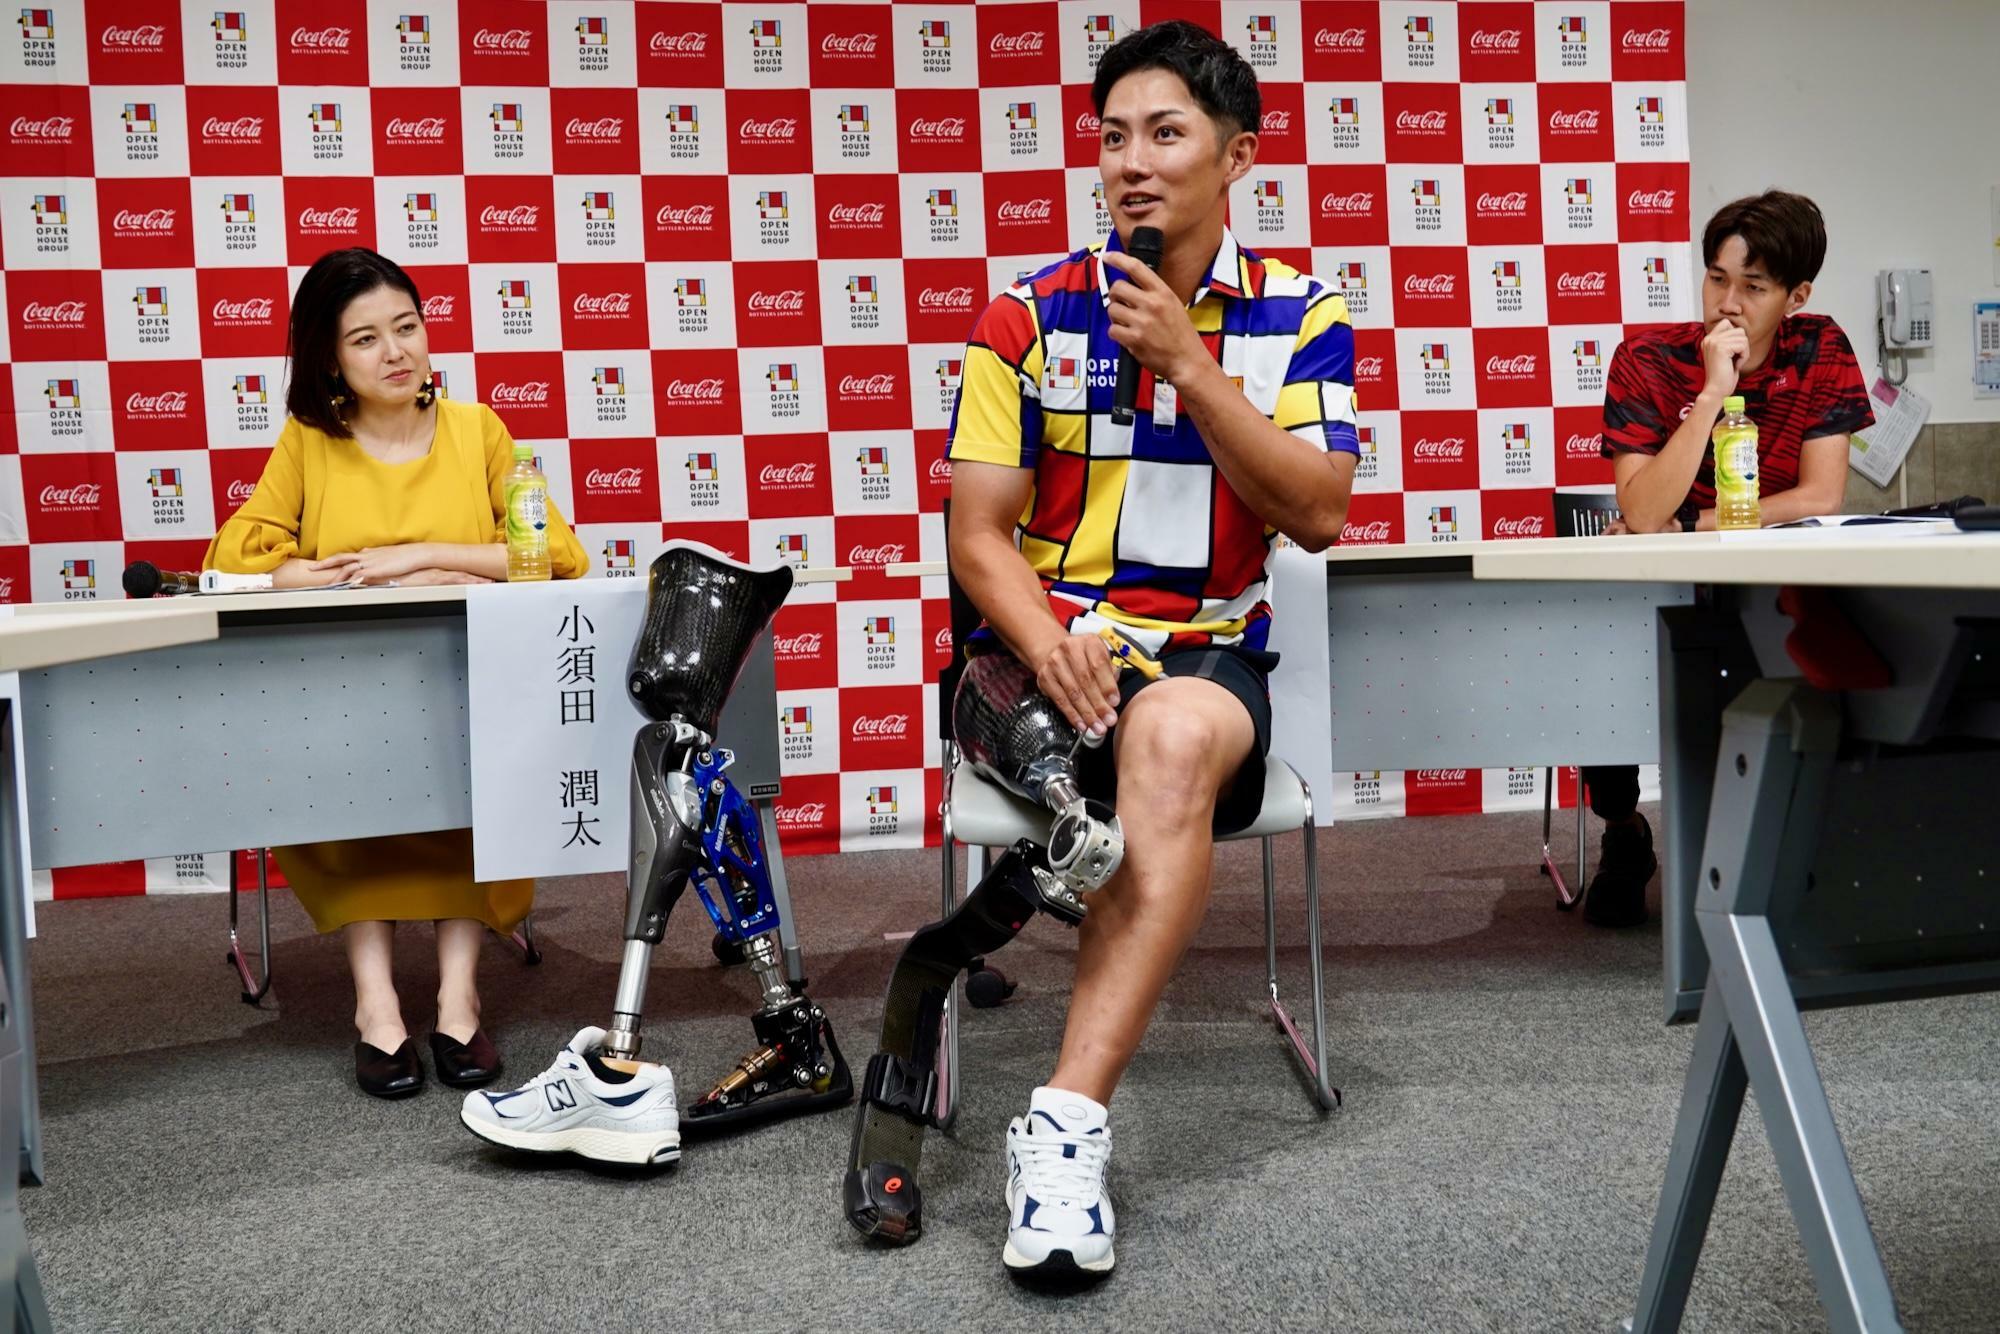 交流会で実演を交えて義足のメンテナンスについて語る小須田。義足の調整がパフォーマンスに直結すると、特に義足のフィット感を高めることに注力している。　写真・PARAPHOTO